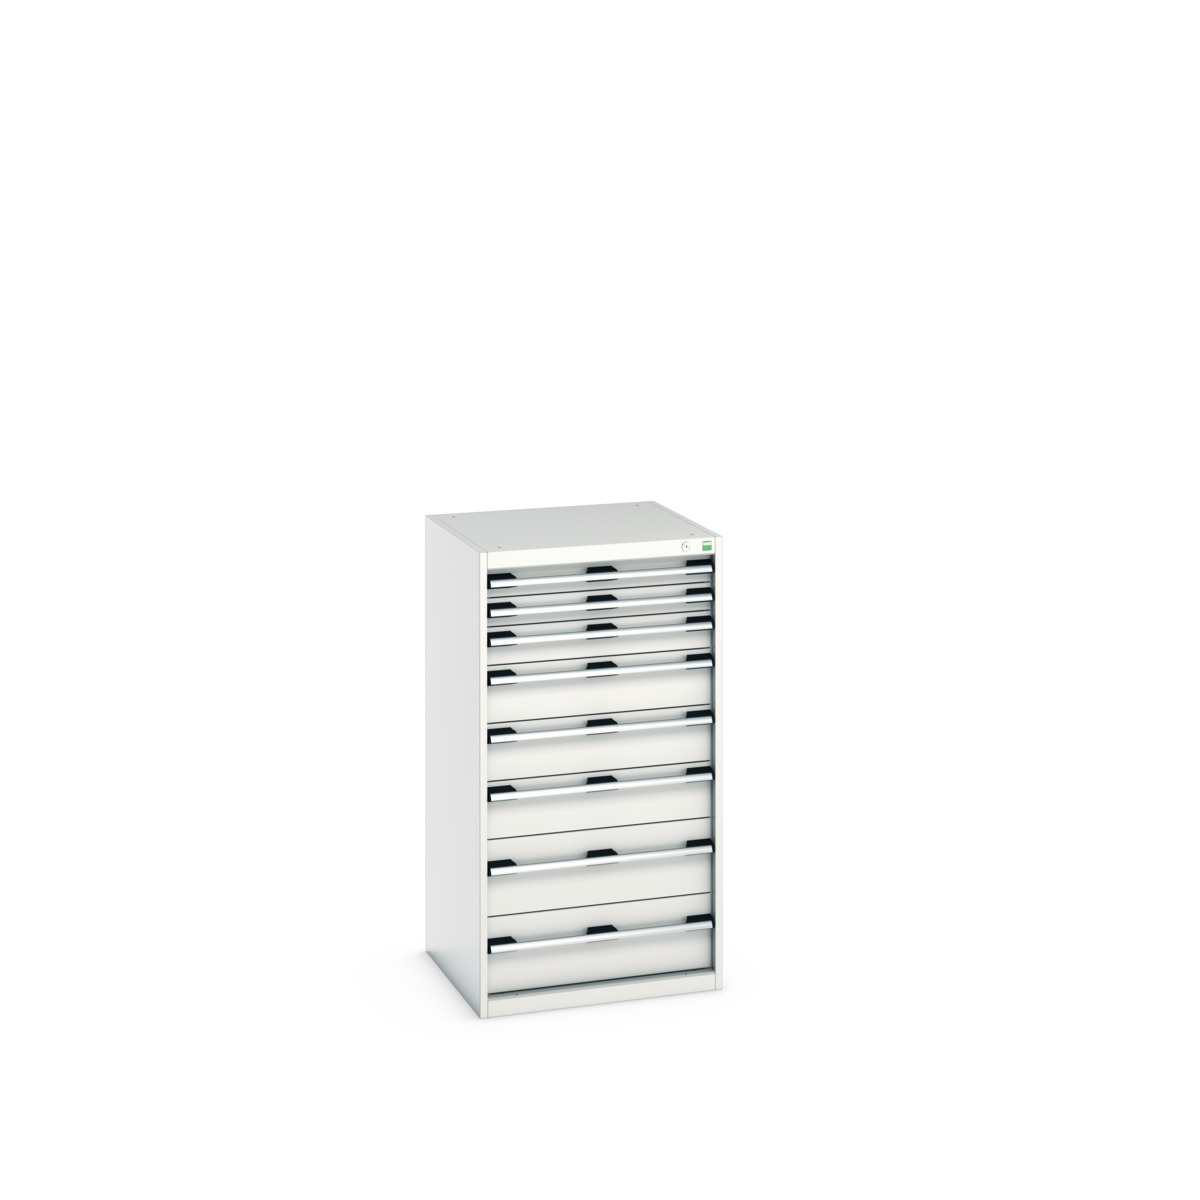 40019071.16V - cubio drawer cabinet